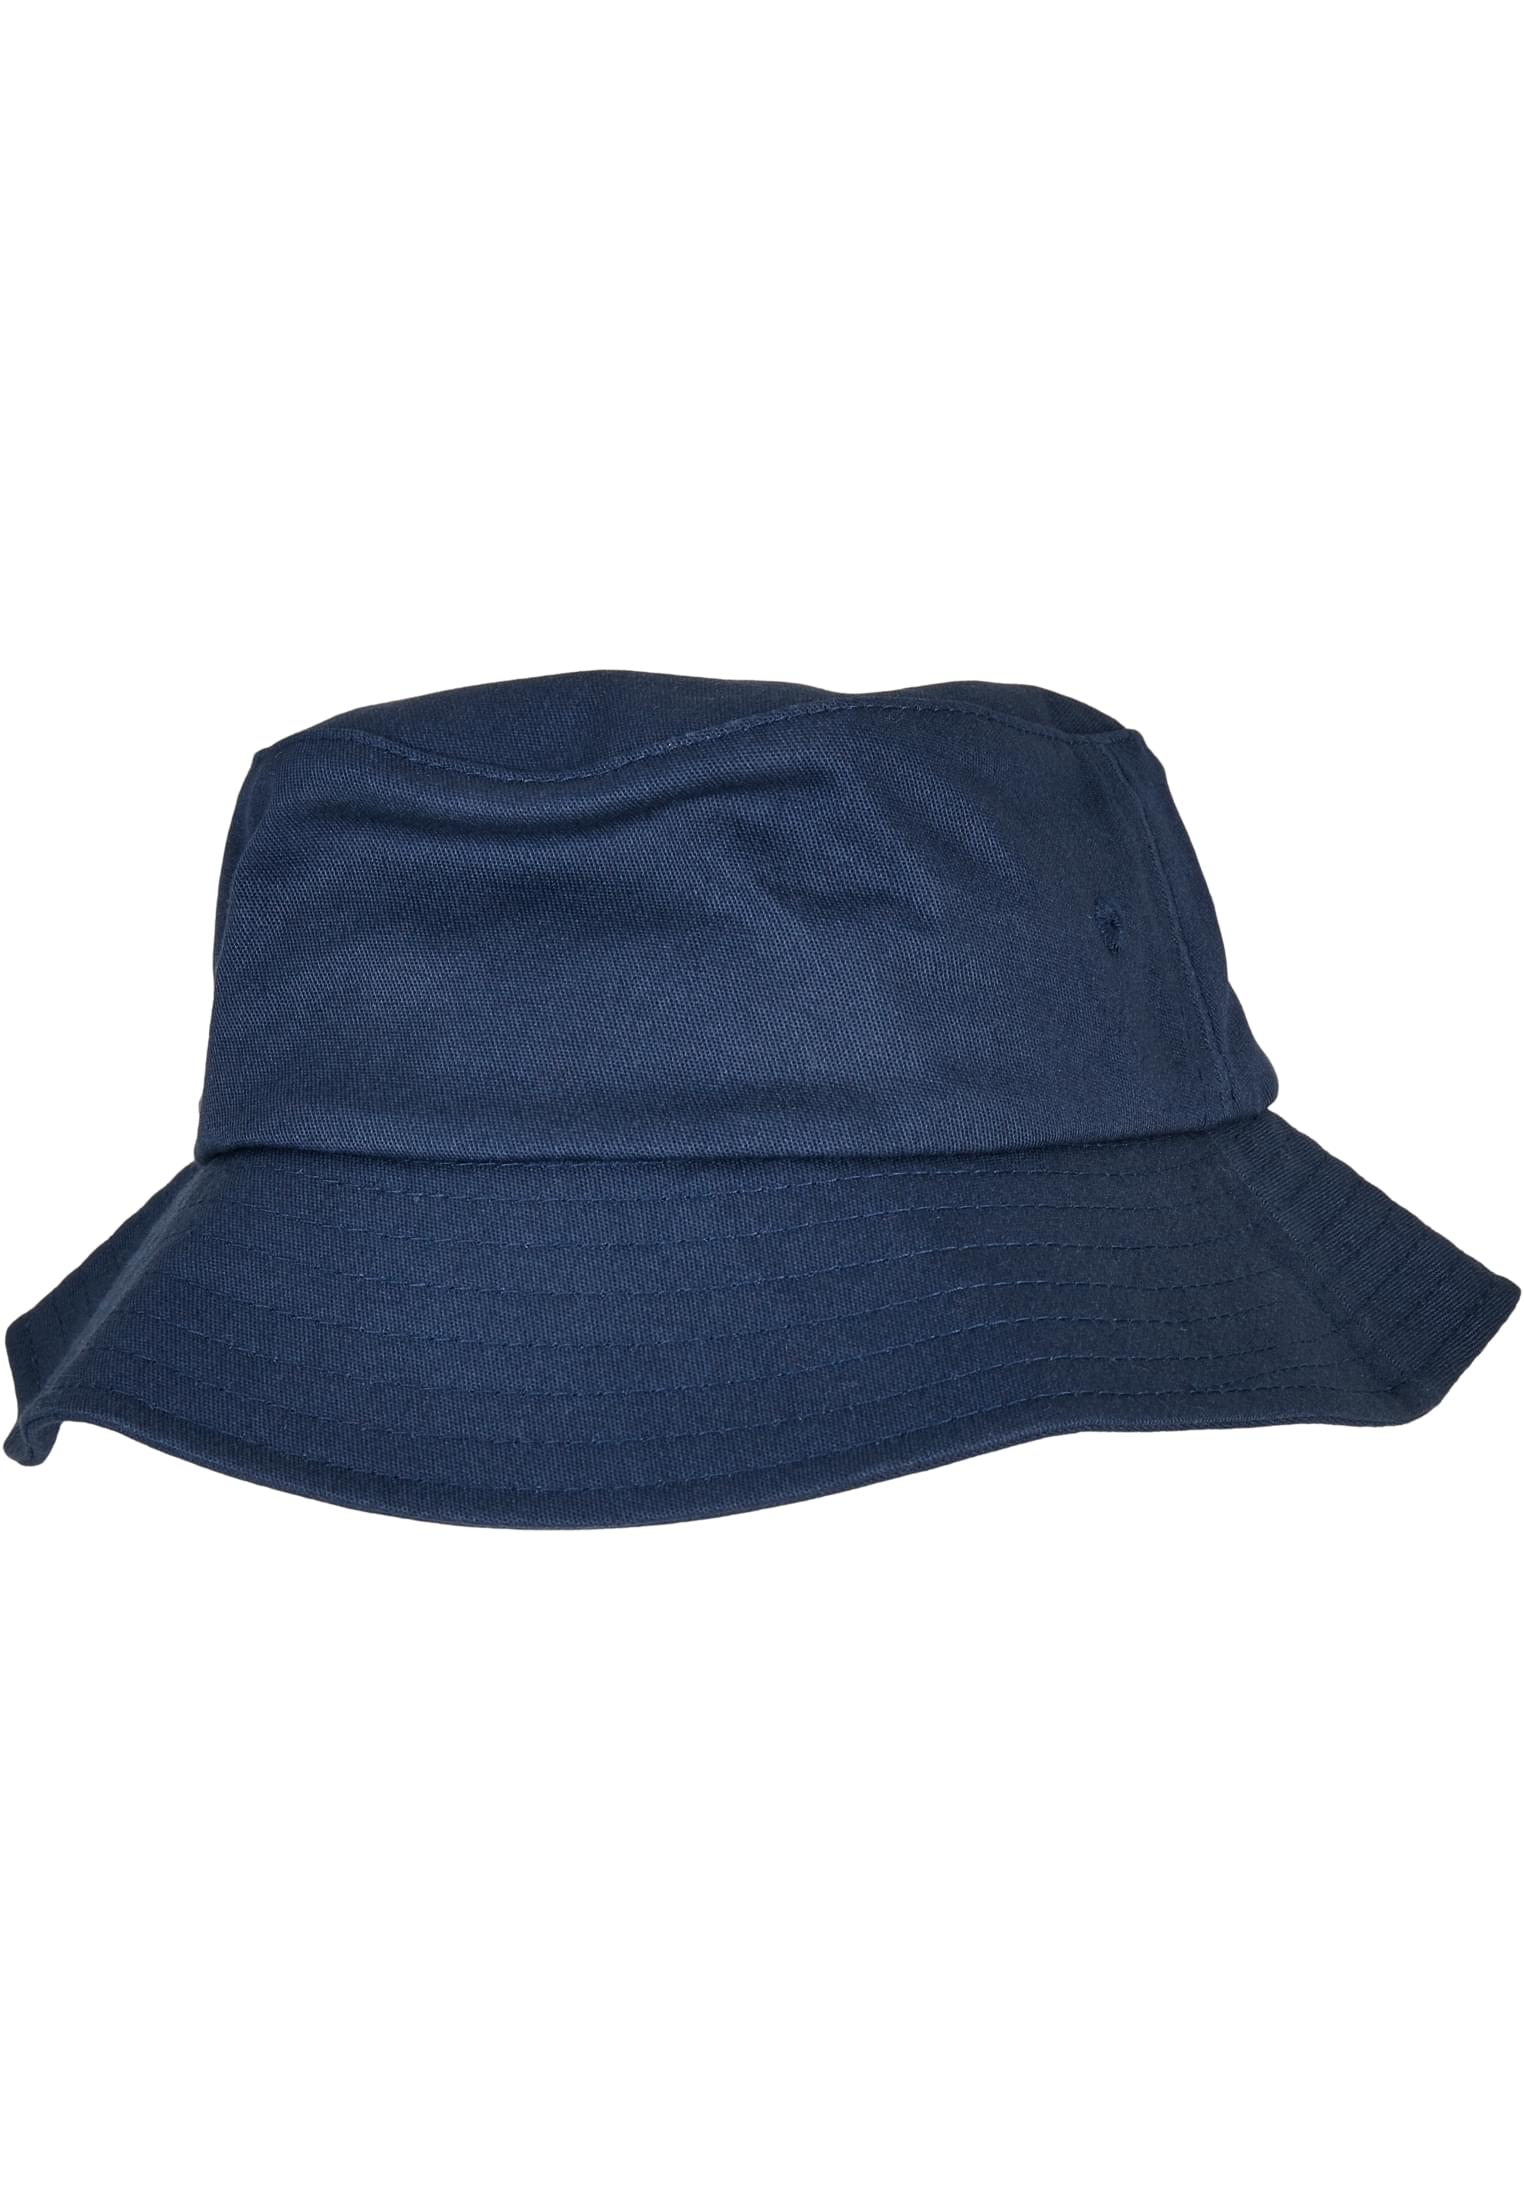 Kids Flexfit Cotton Twill Bucket Hat Kids in Farbe navy